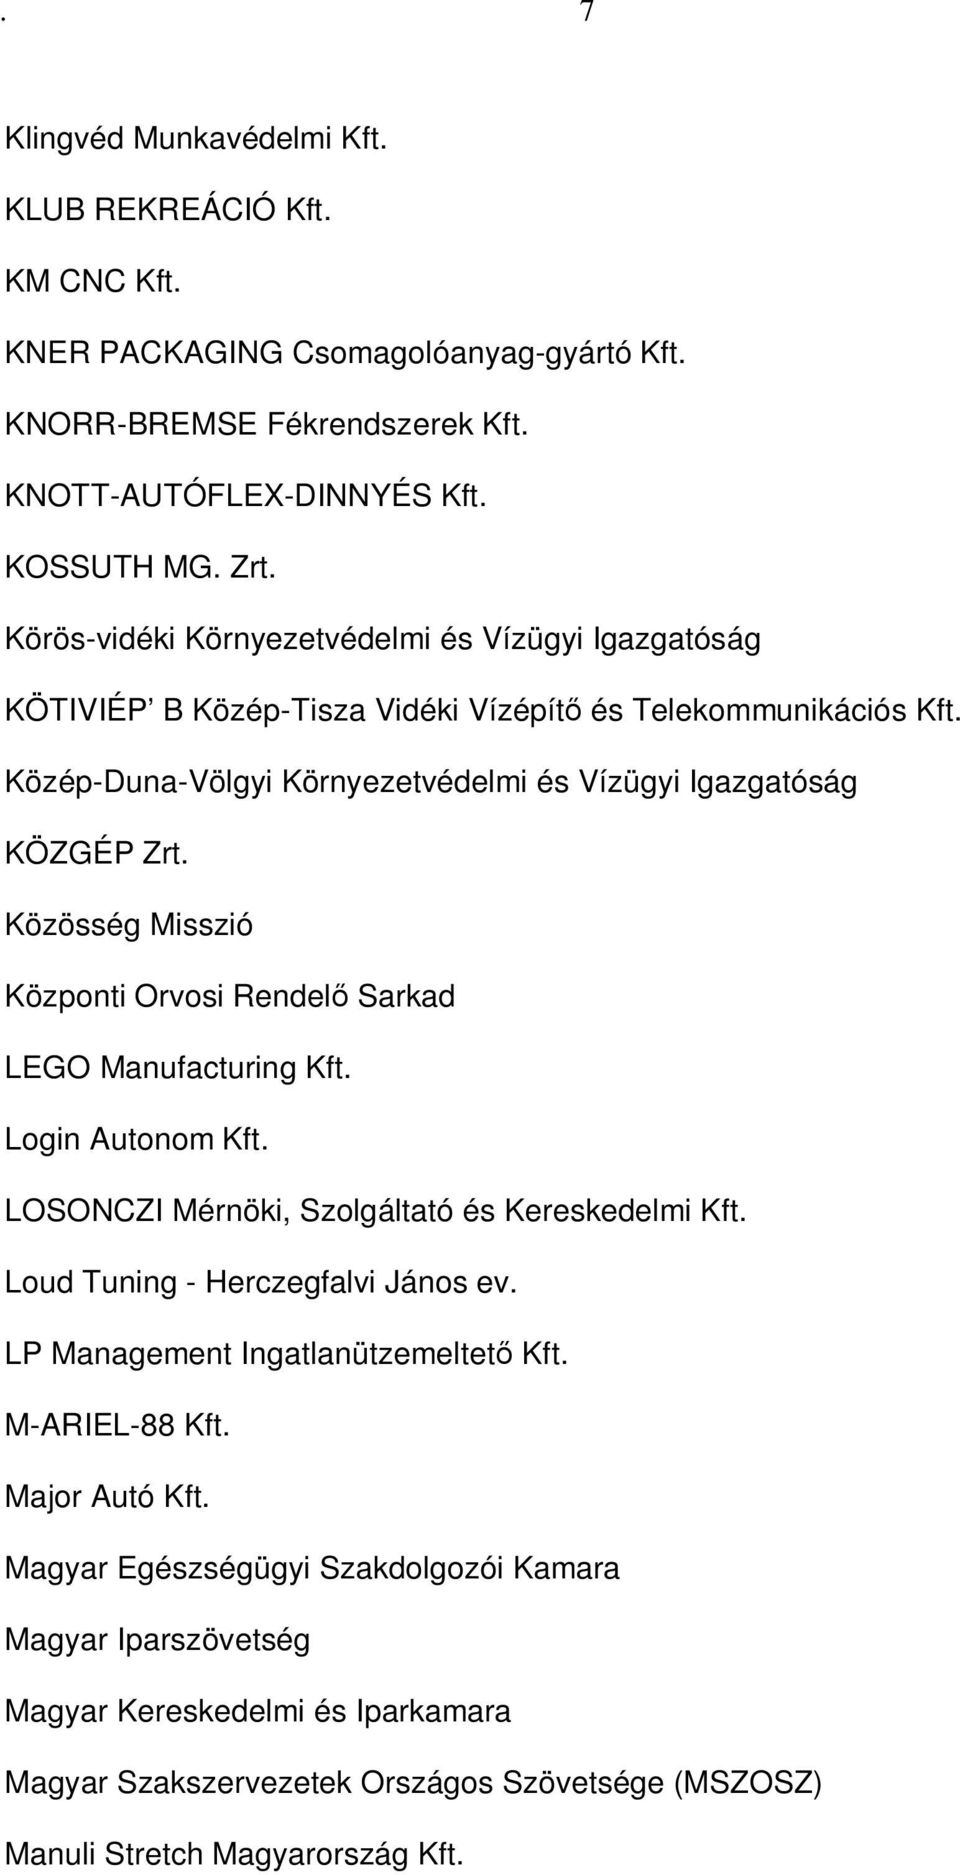 Közösség Misszió Központi Orvosi Rendelő Sarkad LEGO Manufacturing Kft. Login Autonom Kft. LOSONCZI Mérnöki, Szolgáltató és Kereskedelmi Kft. Loud Tuning - Herczegfalvi János ev.